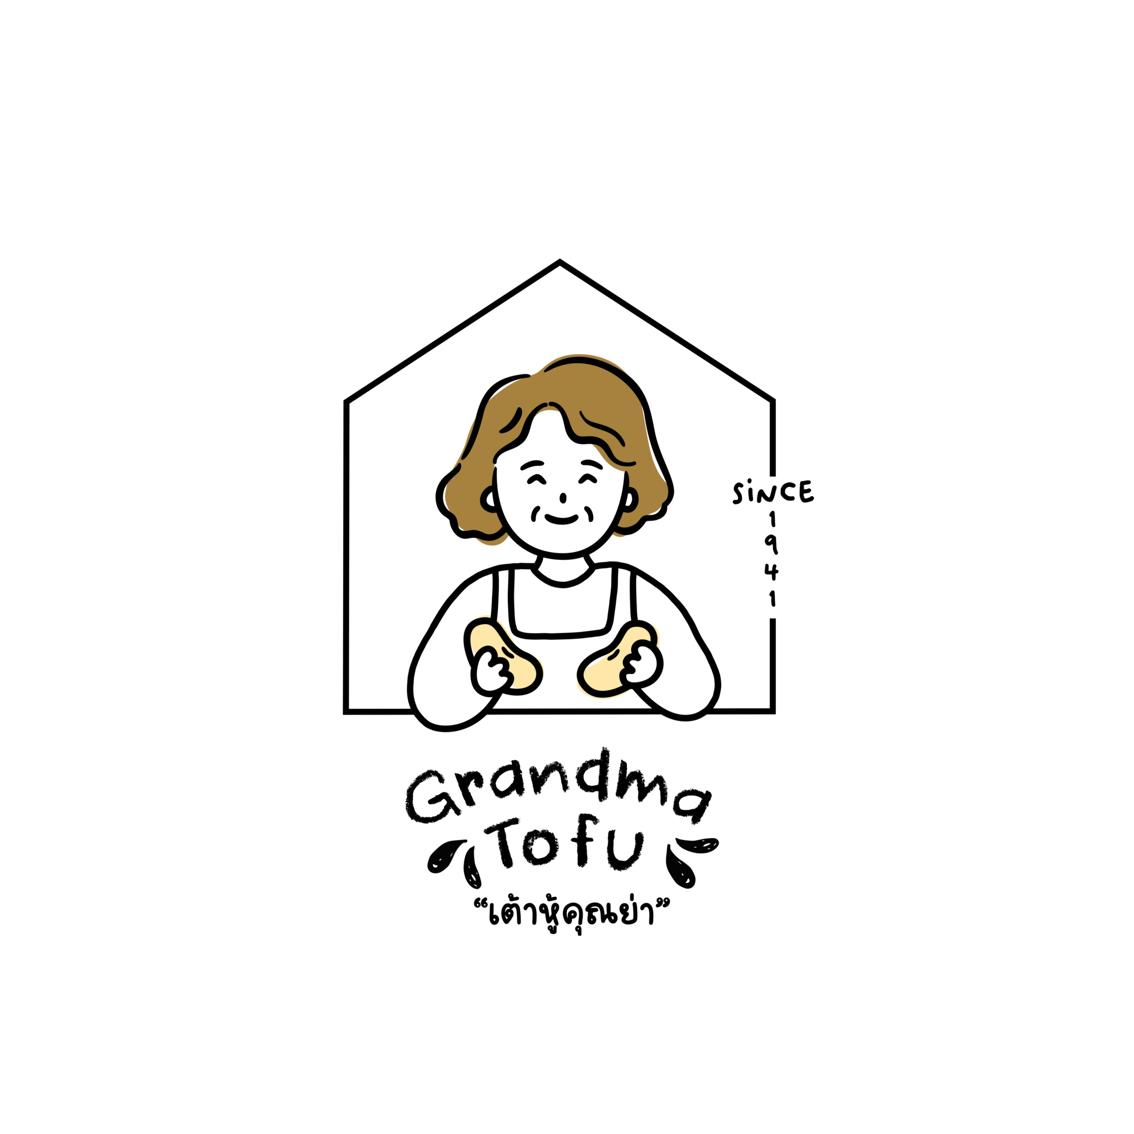 grandma.tofu